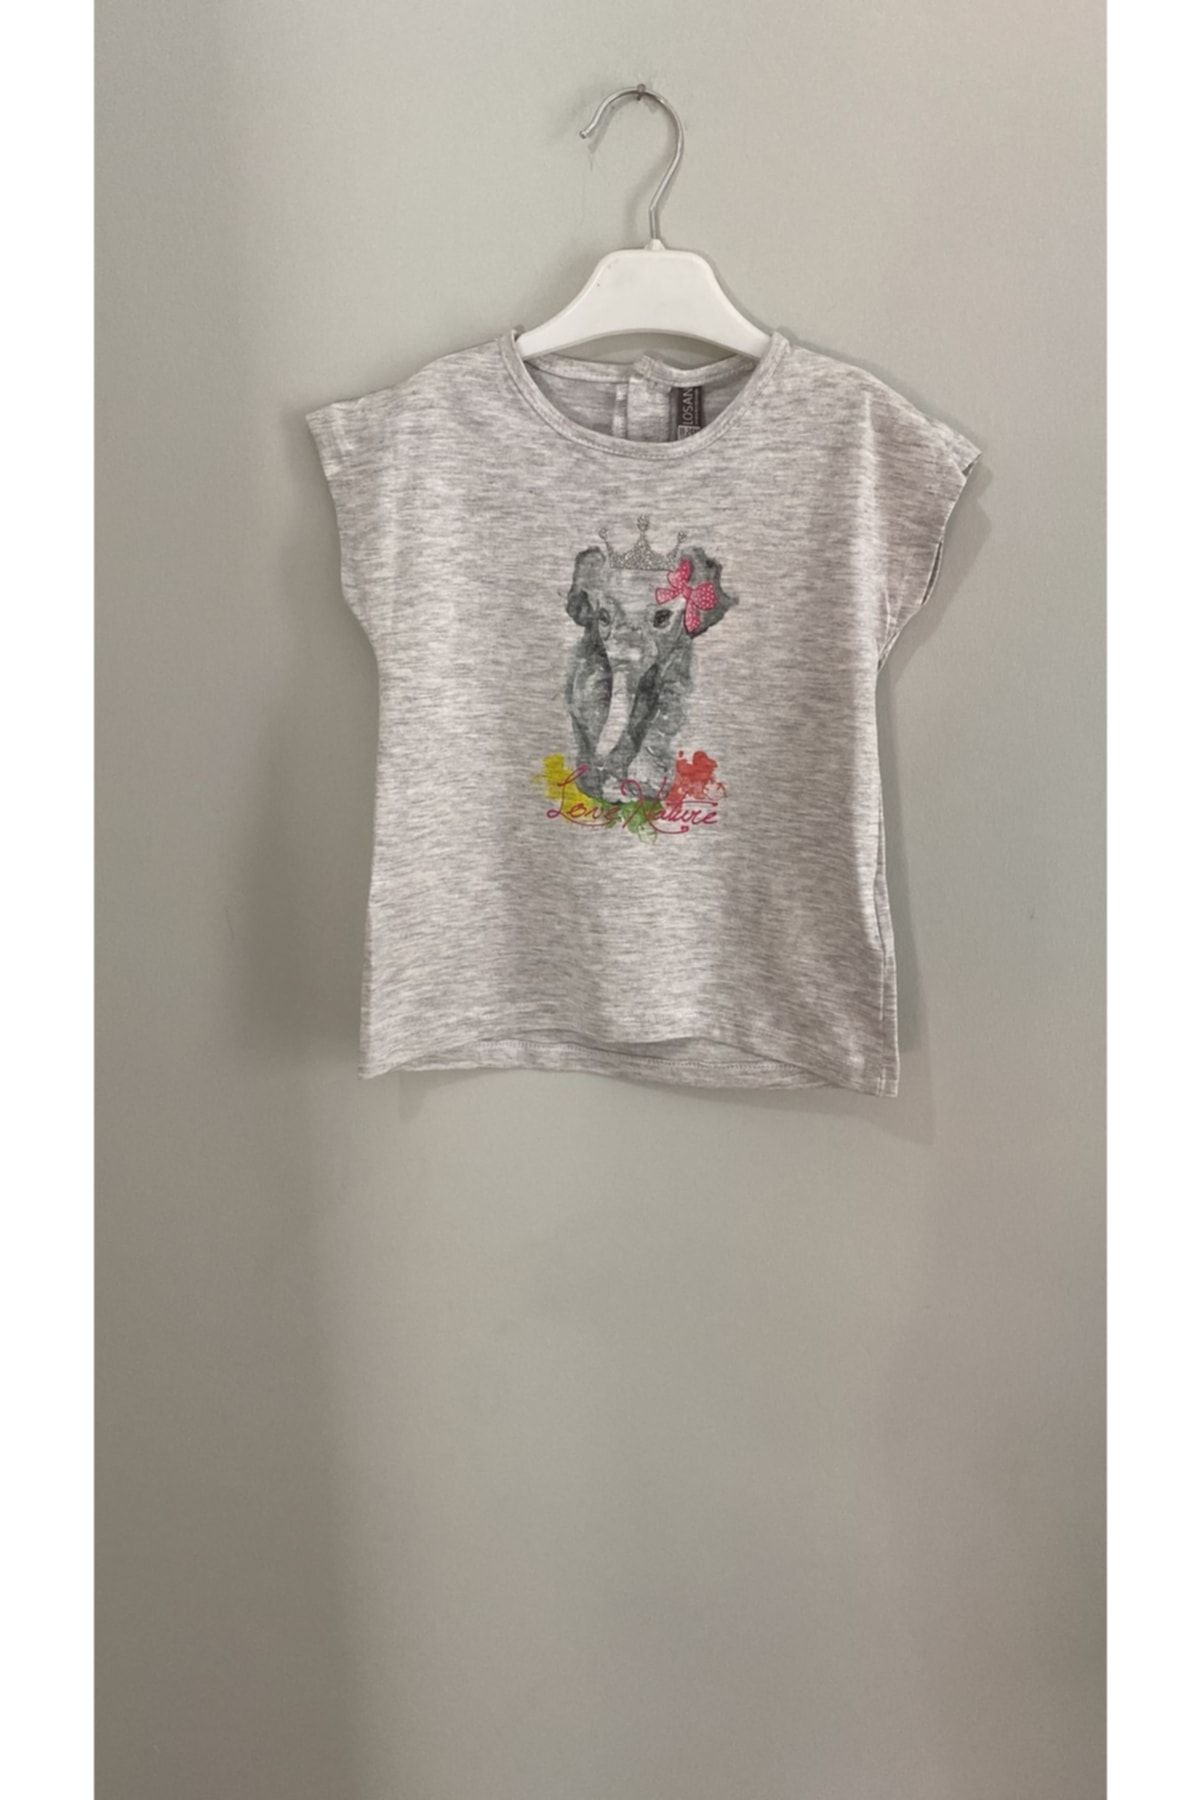 LOSAN Kız Bebek Baskılı T-shirt